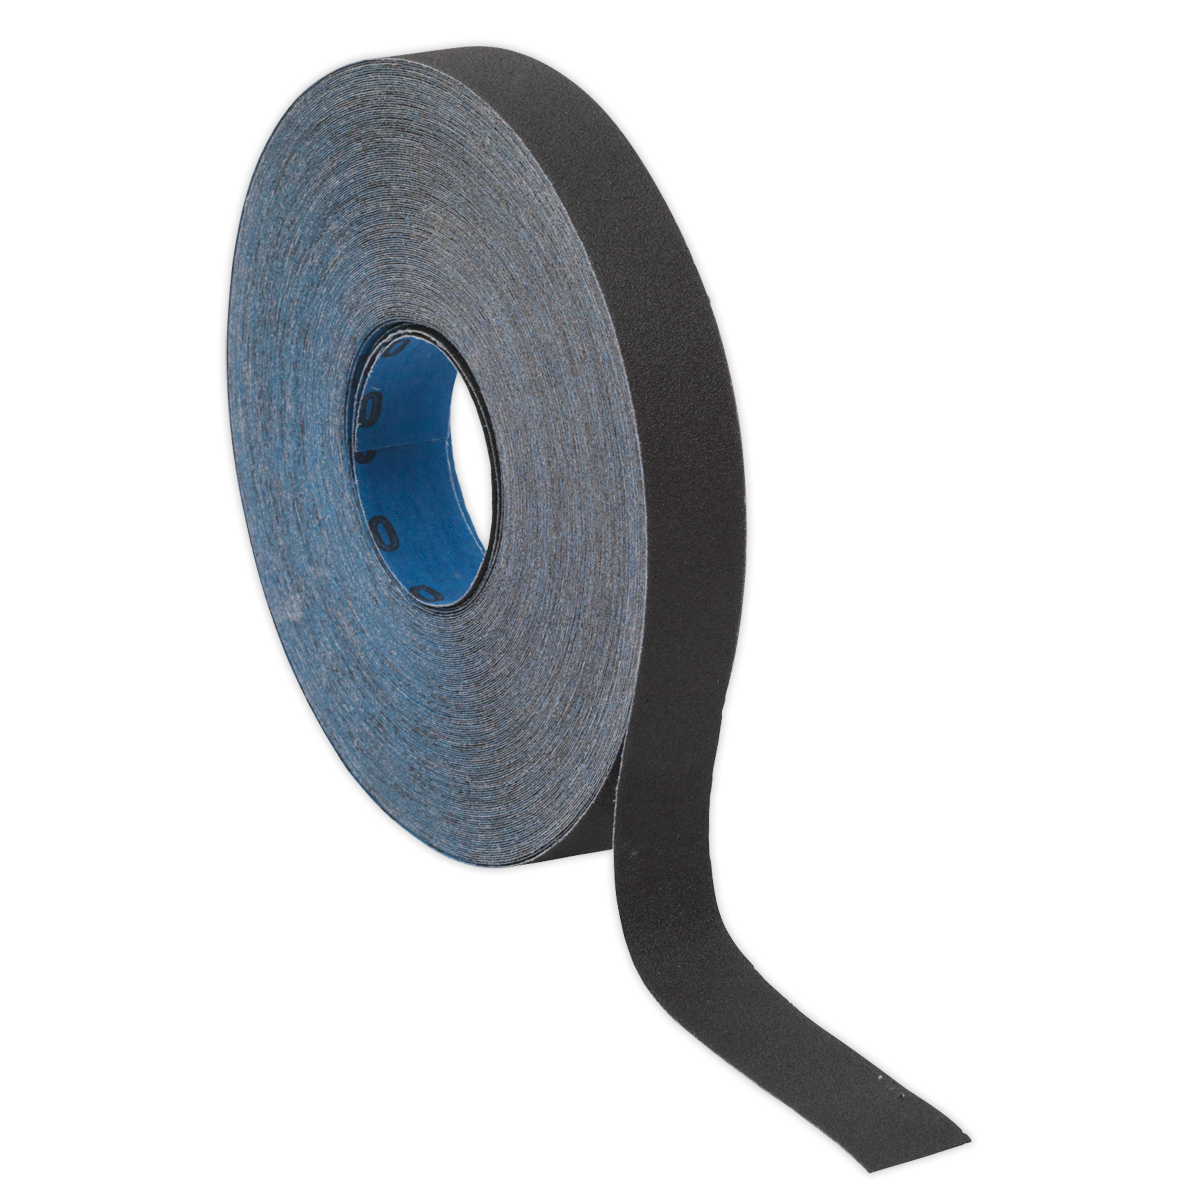 Sealey Emery Roll Blue Twill 25mm x 25m 120Grit